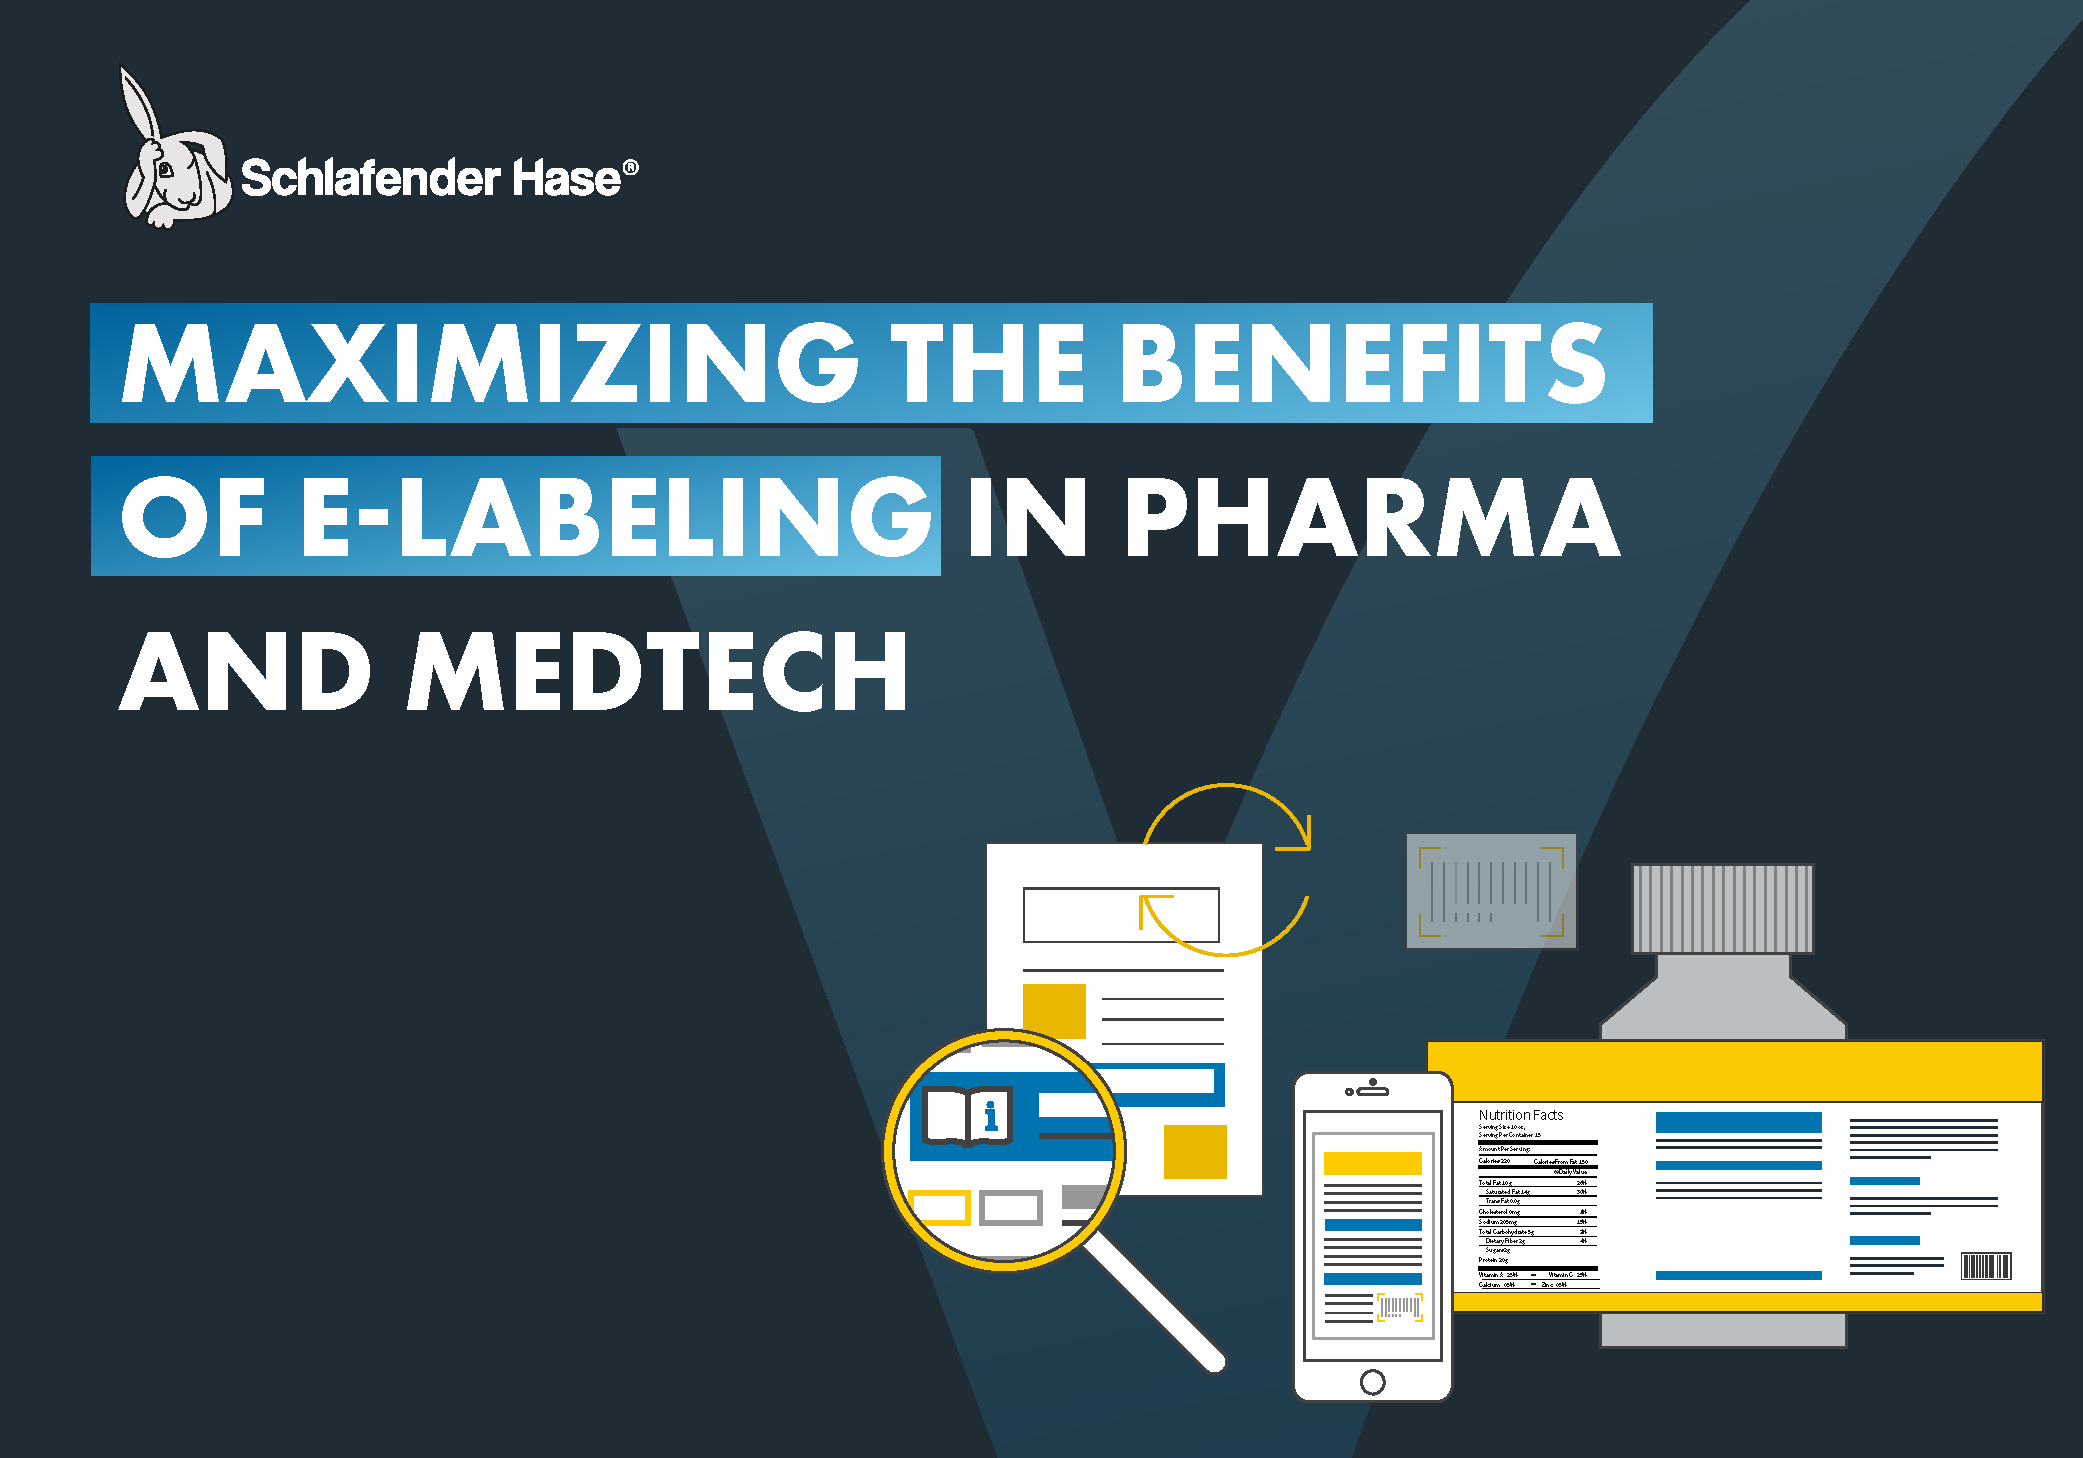 Maximizing the benefits of e-labeling